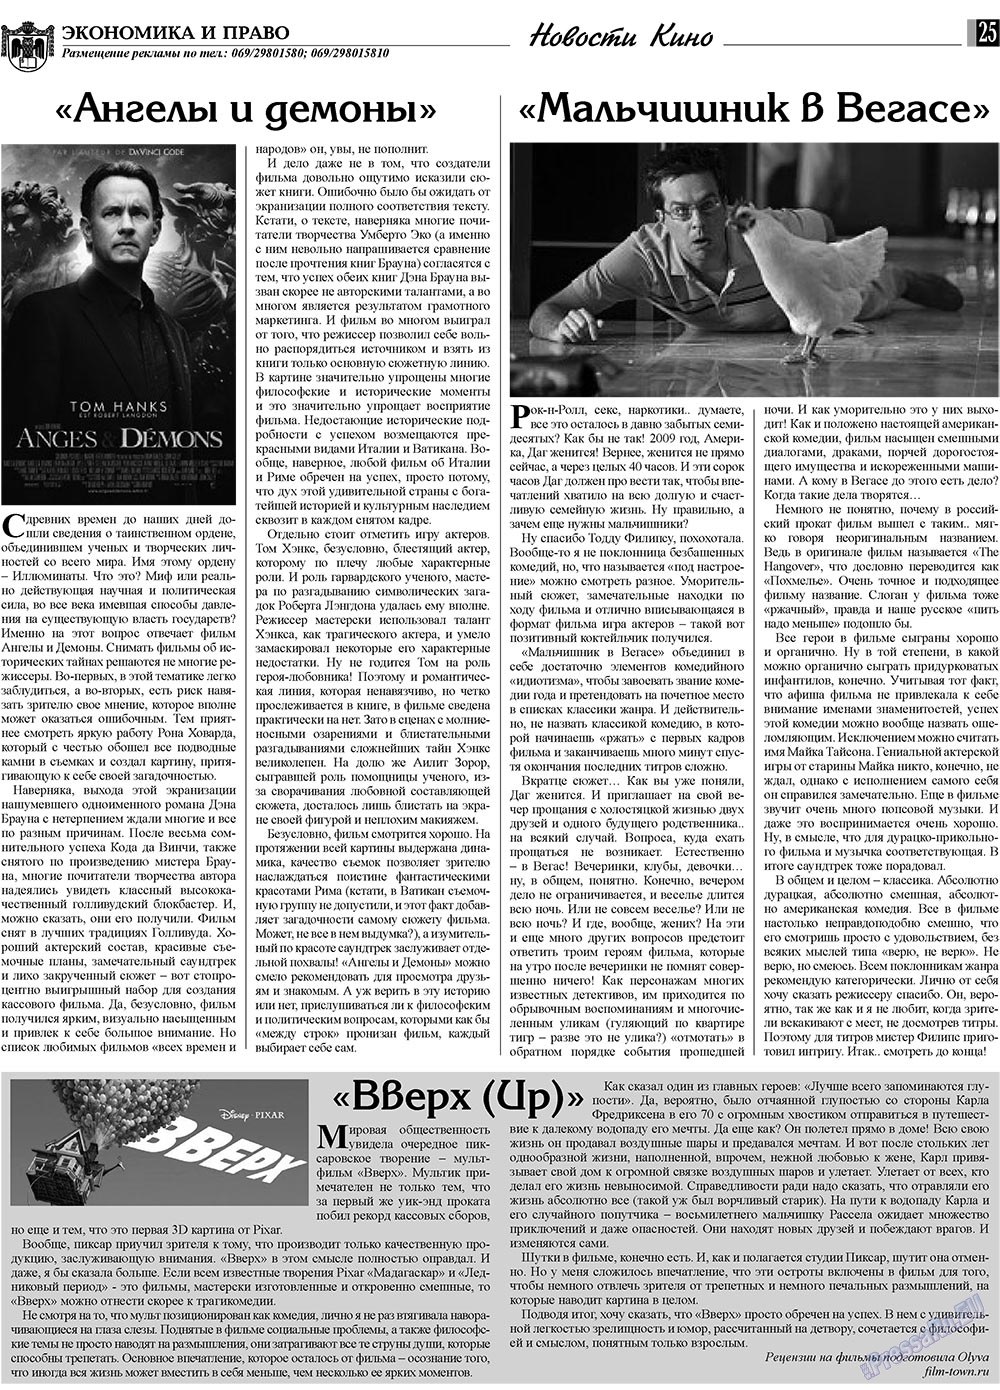 Экономика и право, газета. 2009 №11 стр.25